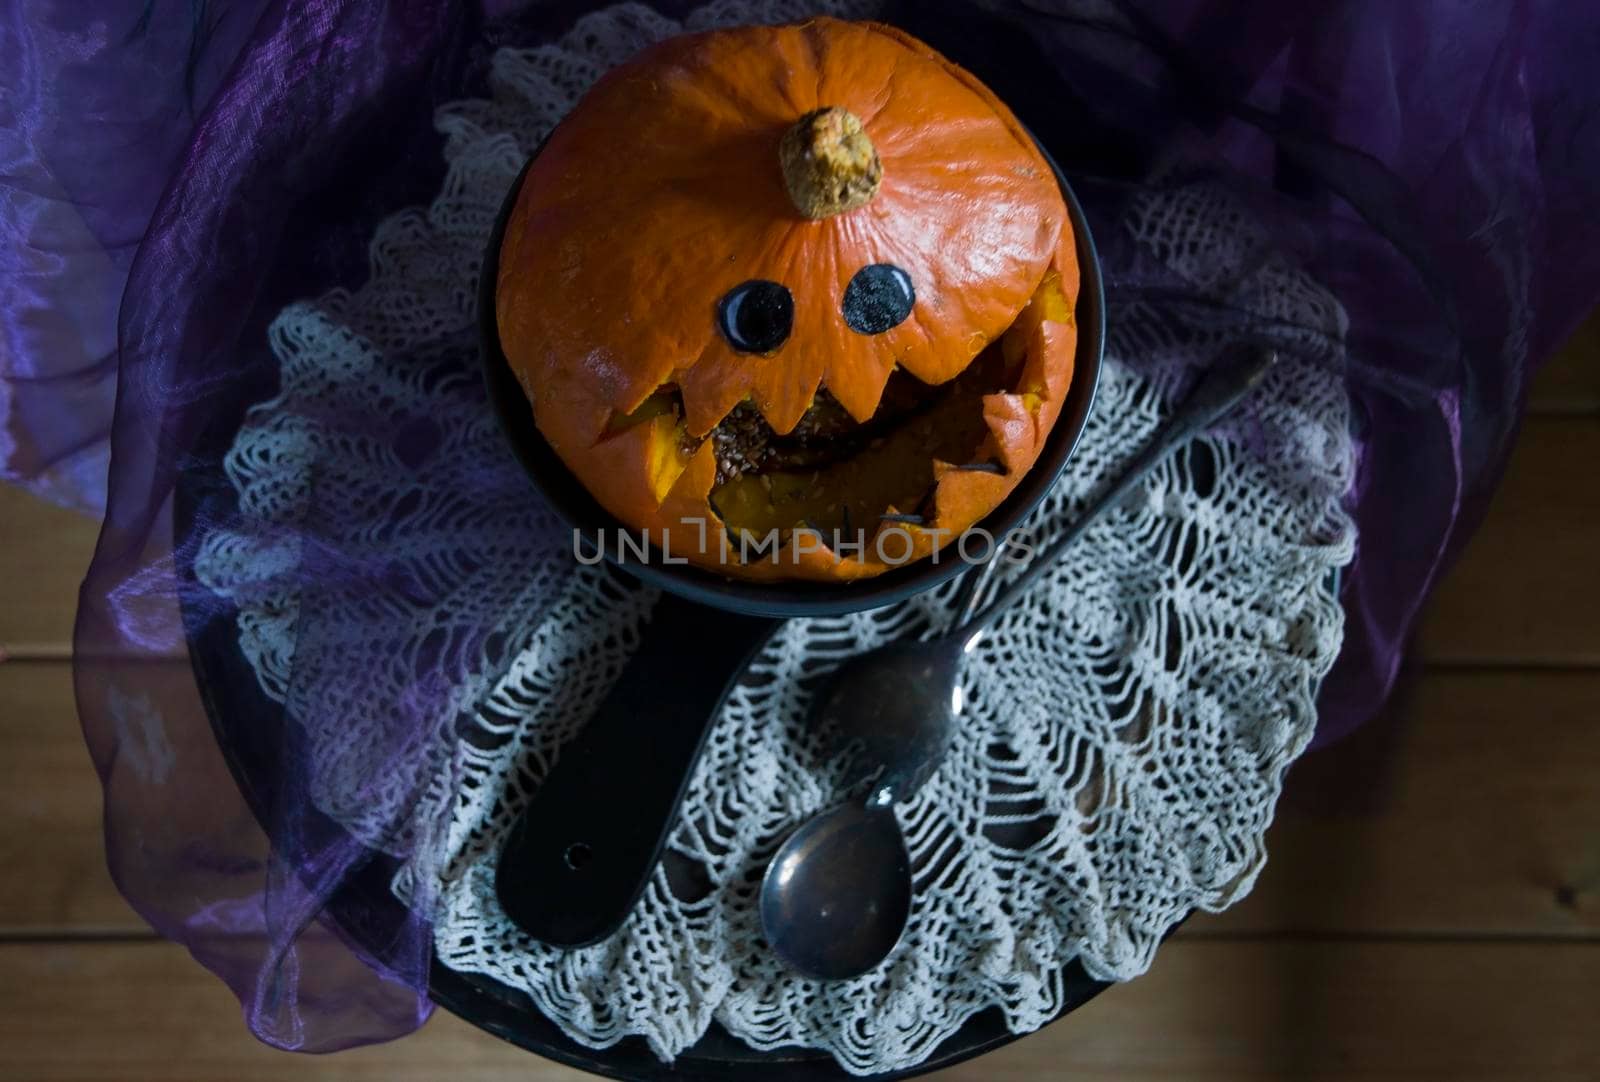 Halloween Pumpkin head, pumpkin with teeth and eyes, selective focus, by KaterinaDalemans